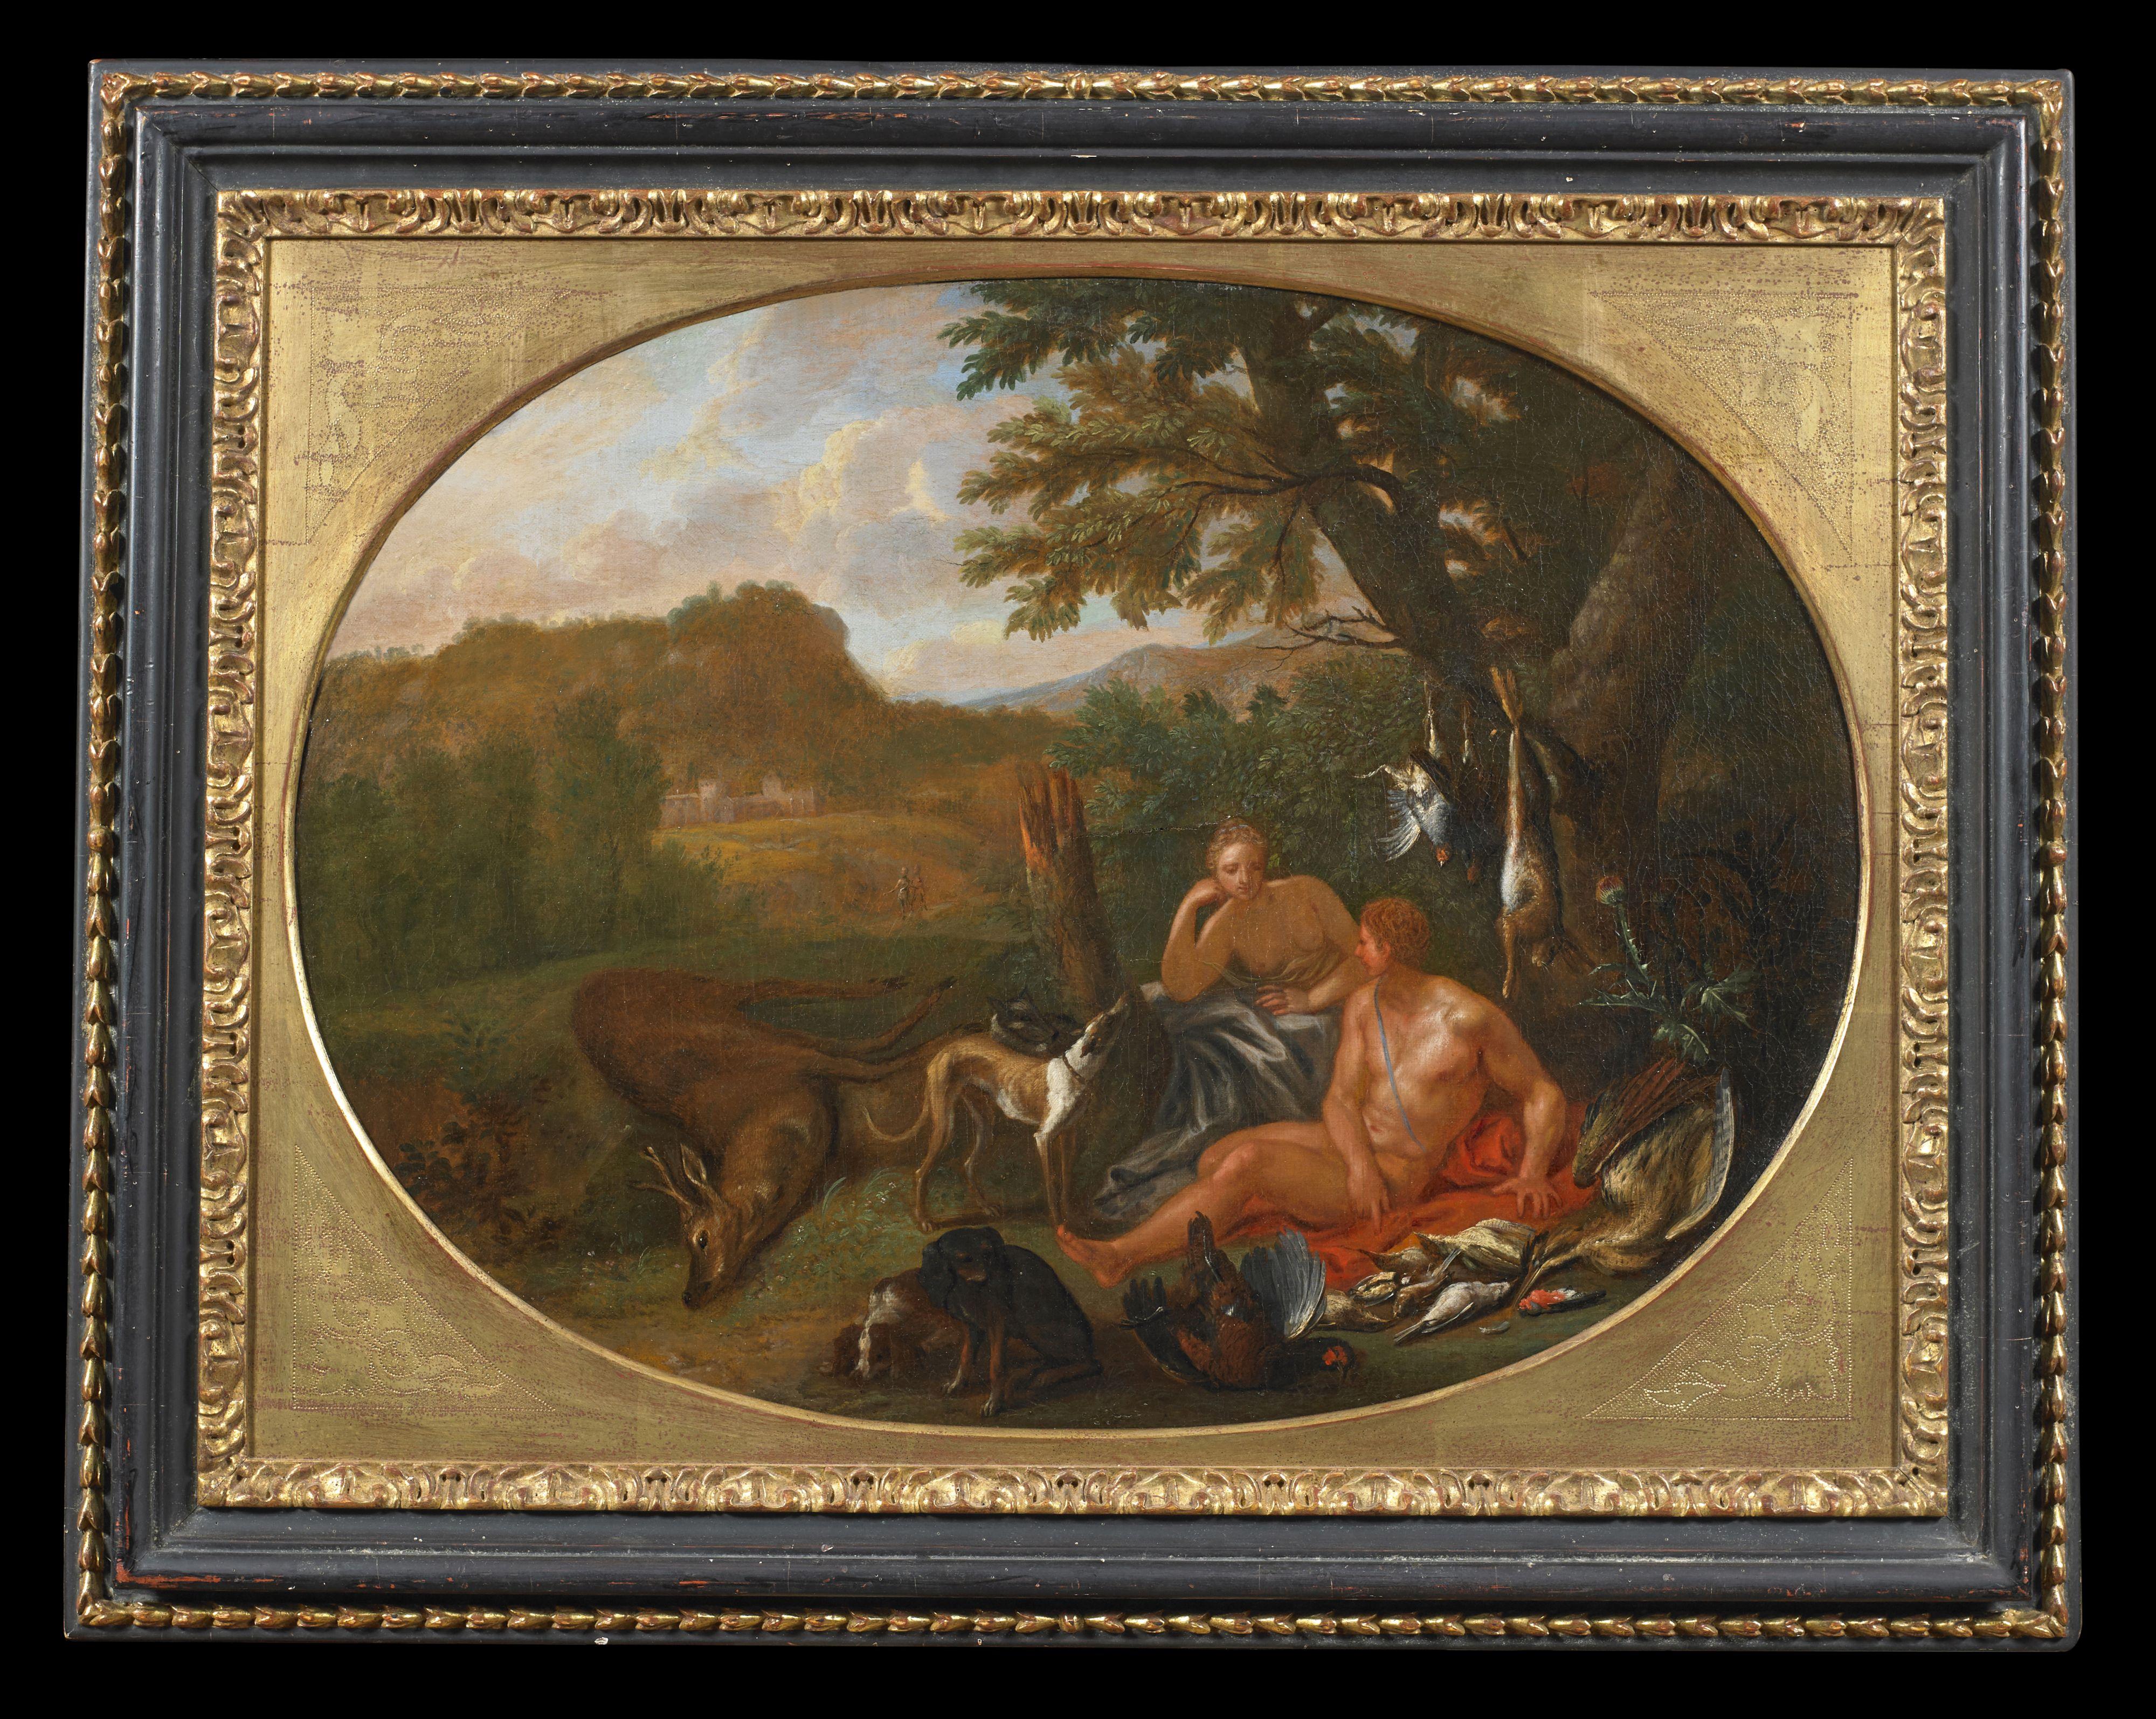 Paar ovale Gemälde mit den Maßen 66 x 89 cm ohne Rahmen und 90 x 115 cm mit gleichem Rahmen, die zwei galante Momente während einer Jagdpause des Malers Hendrik Van Limborch ( Den Haag 1681 - 1759 ) darstellen.

Wunderschön ist die Farbwirkung